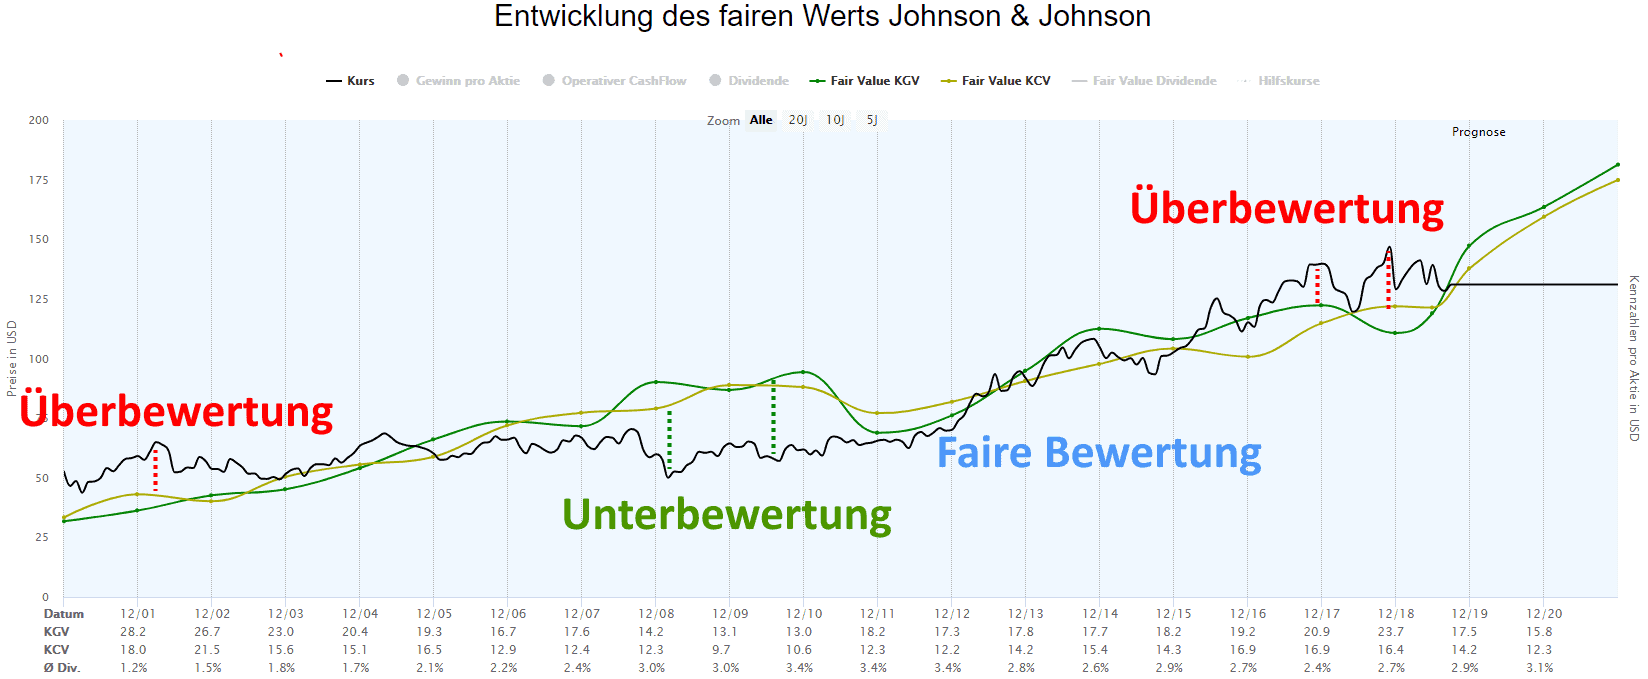 Über- und Unterbewertung der Johnson und Johnson Aktie im Zeitverlauf